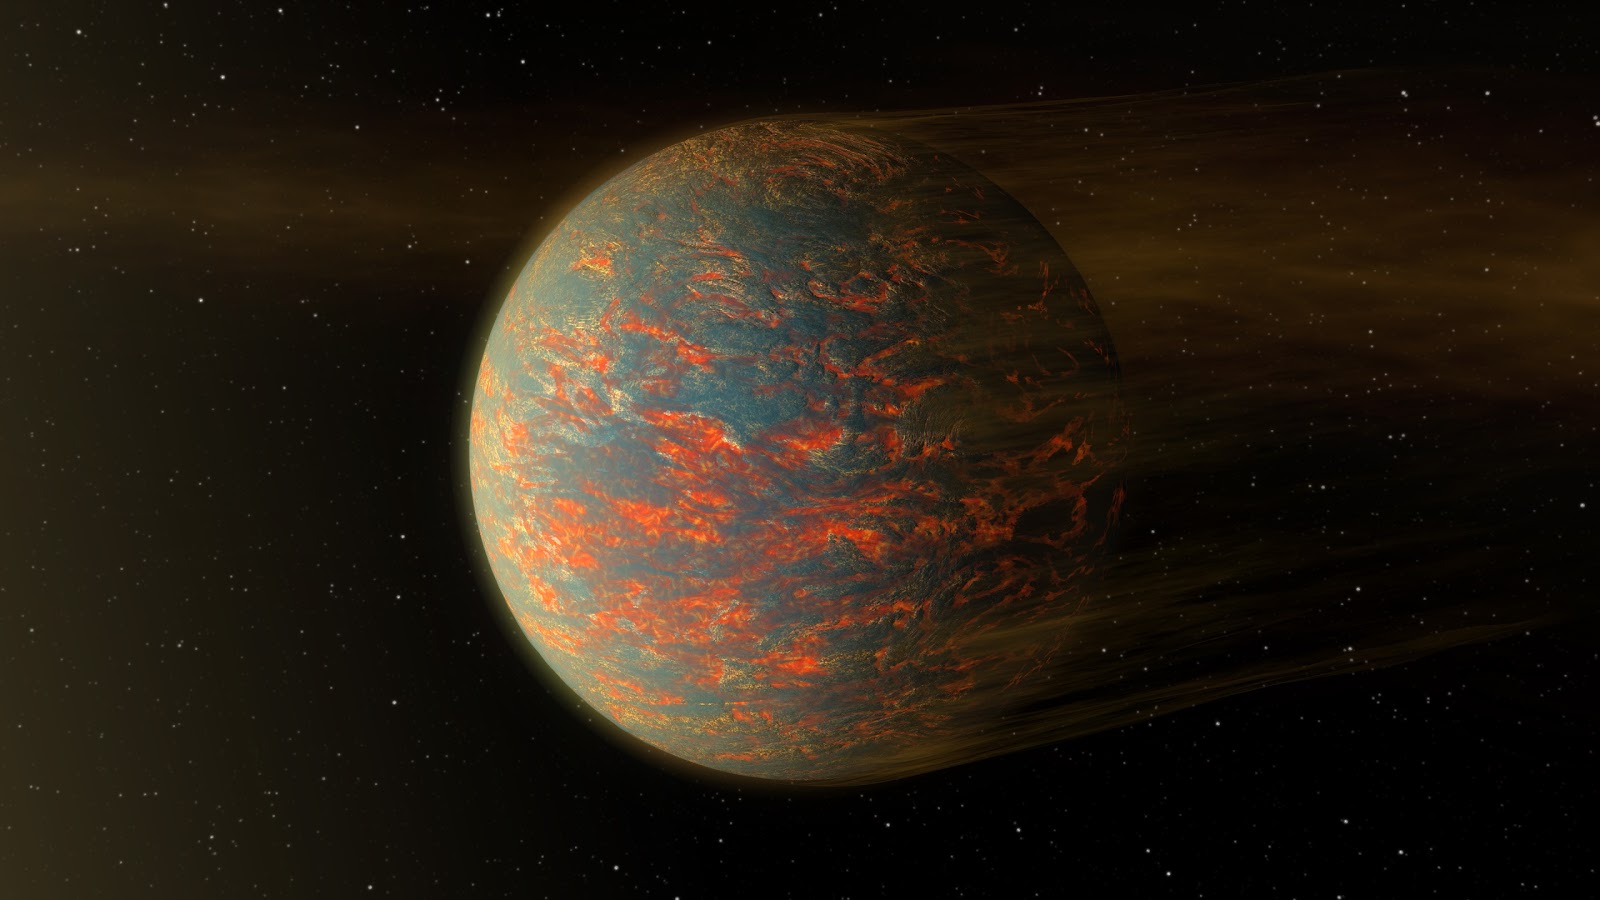 55-Cancri-e-10.jpg